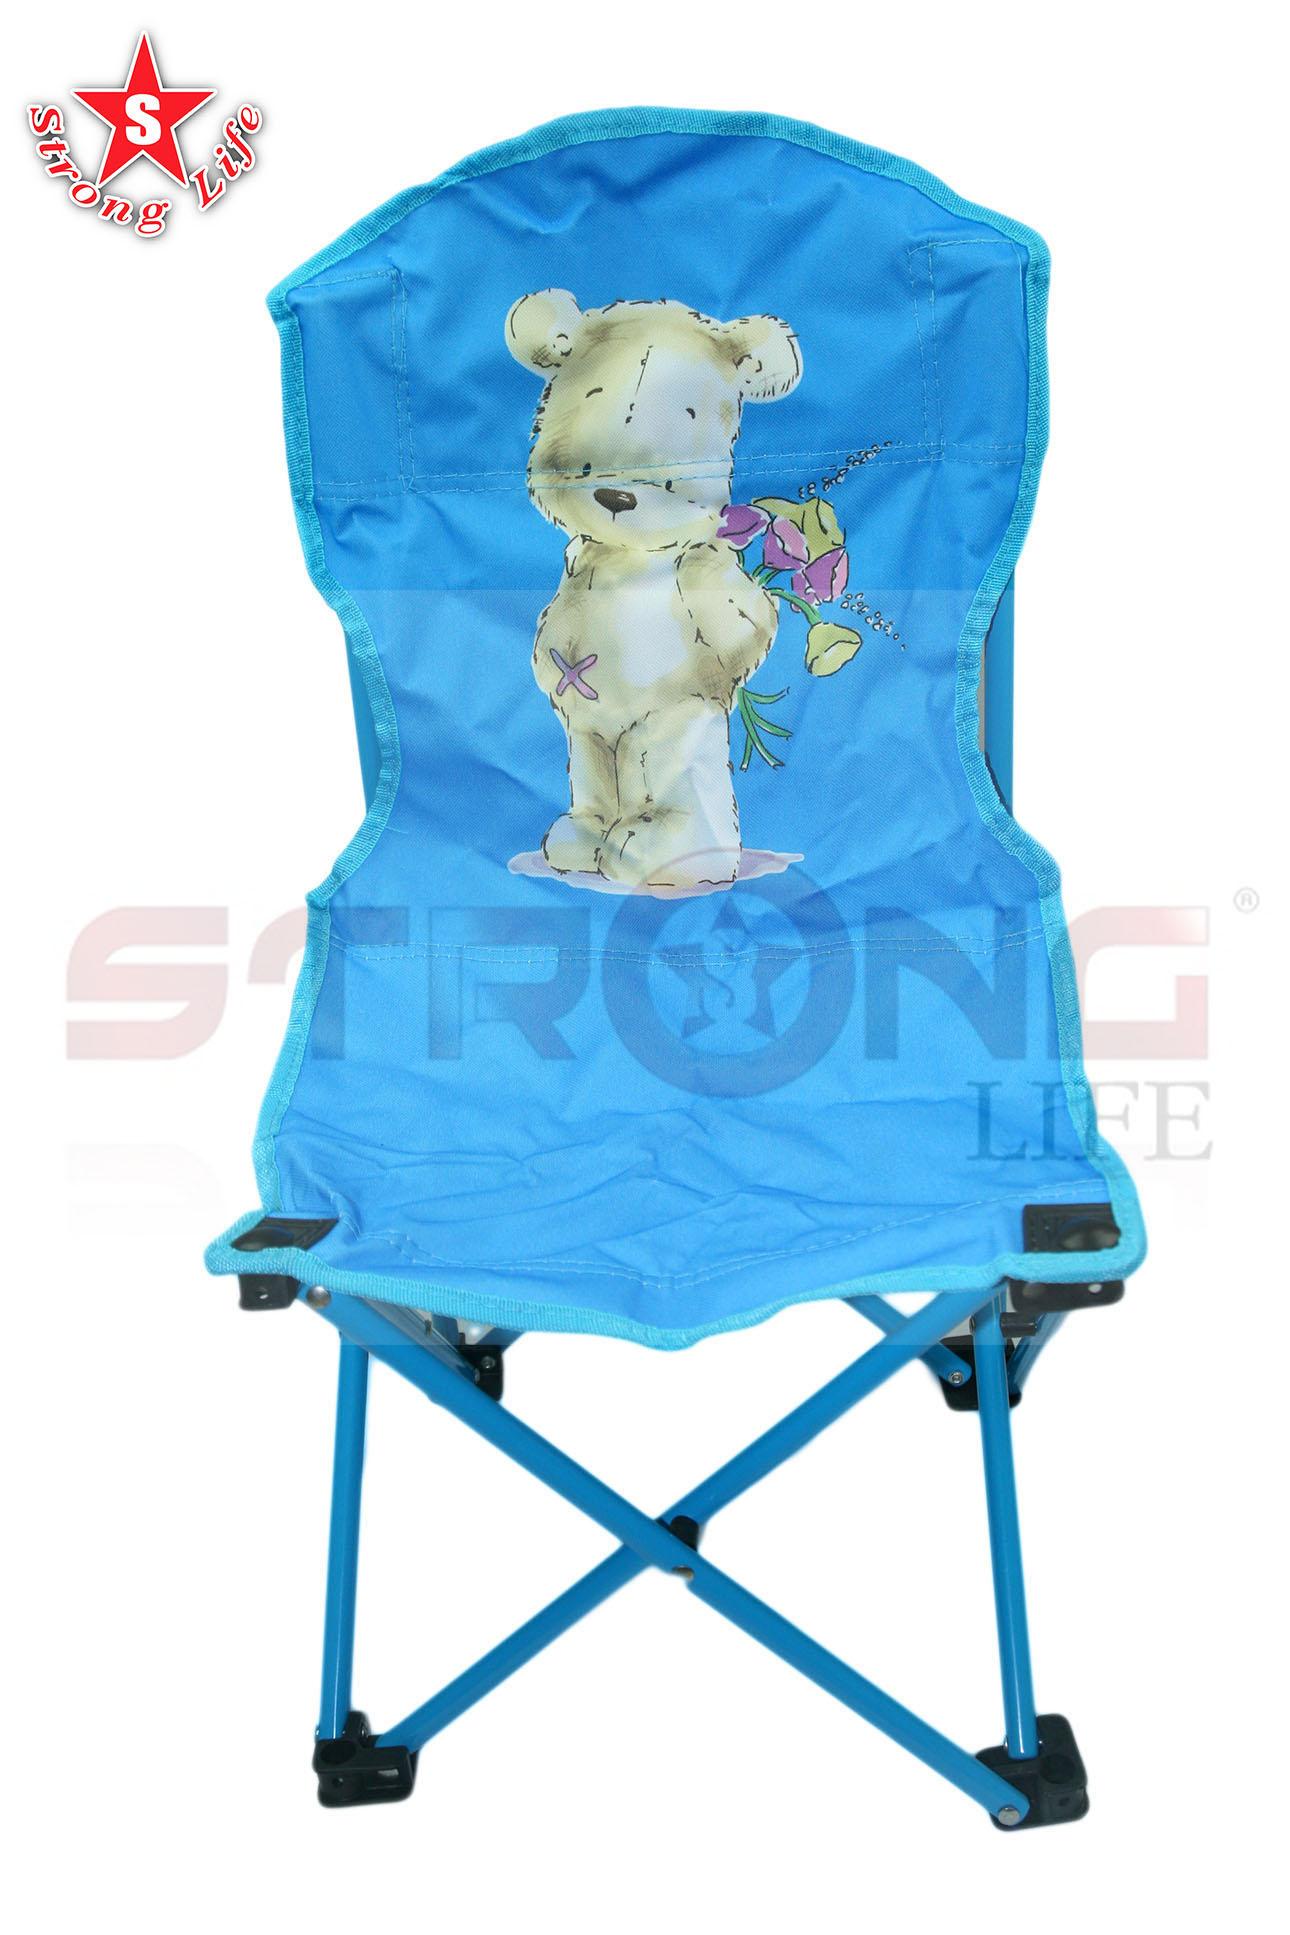 SKA เก้าอี้สนามเด็ก Cuddle me ลายหมี พับเก็บได้ รุ่น DK8008